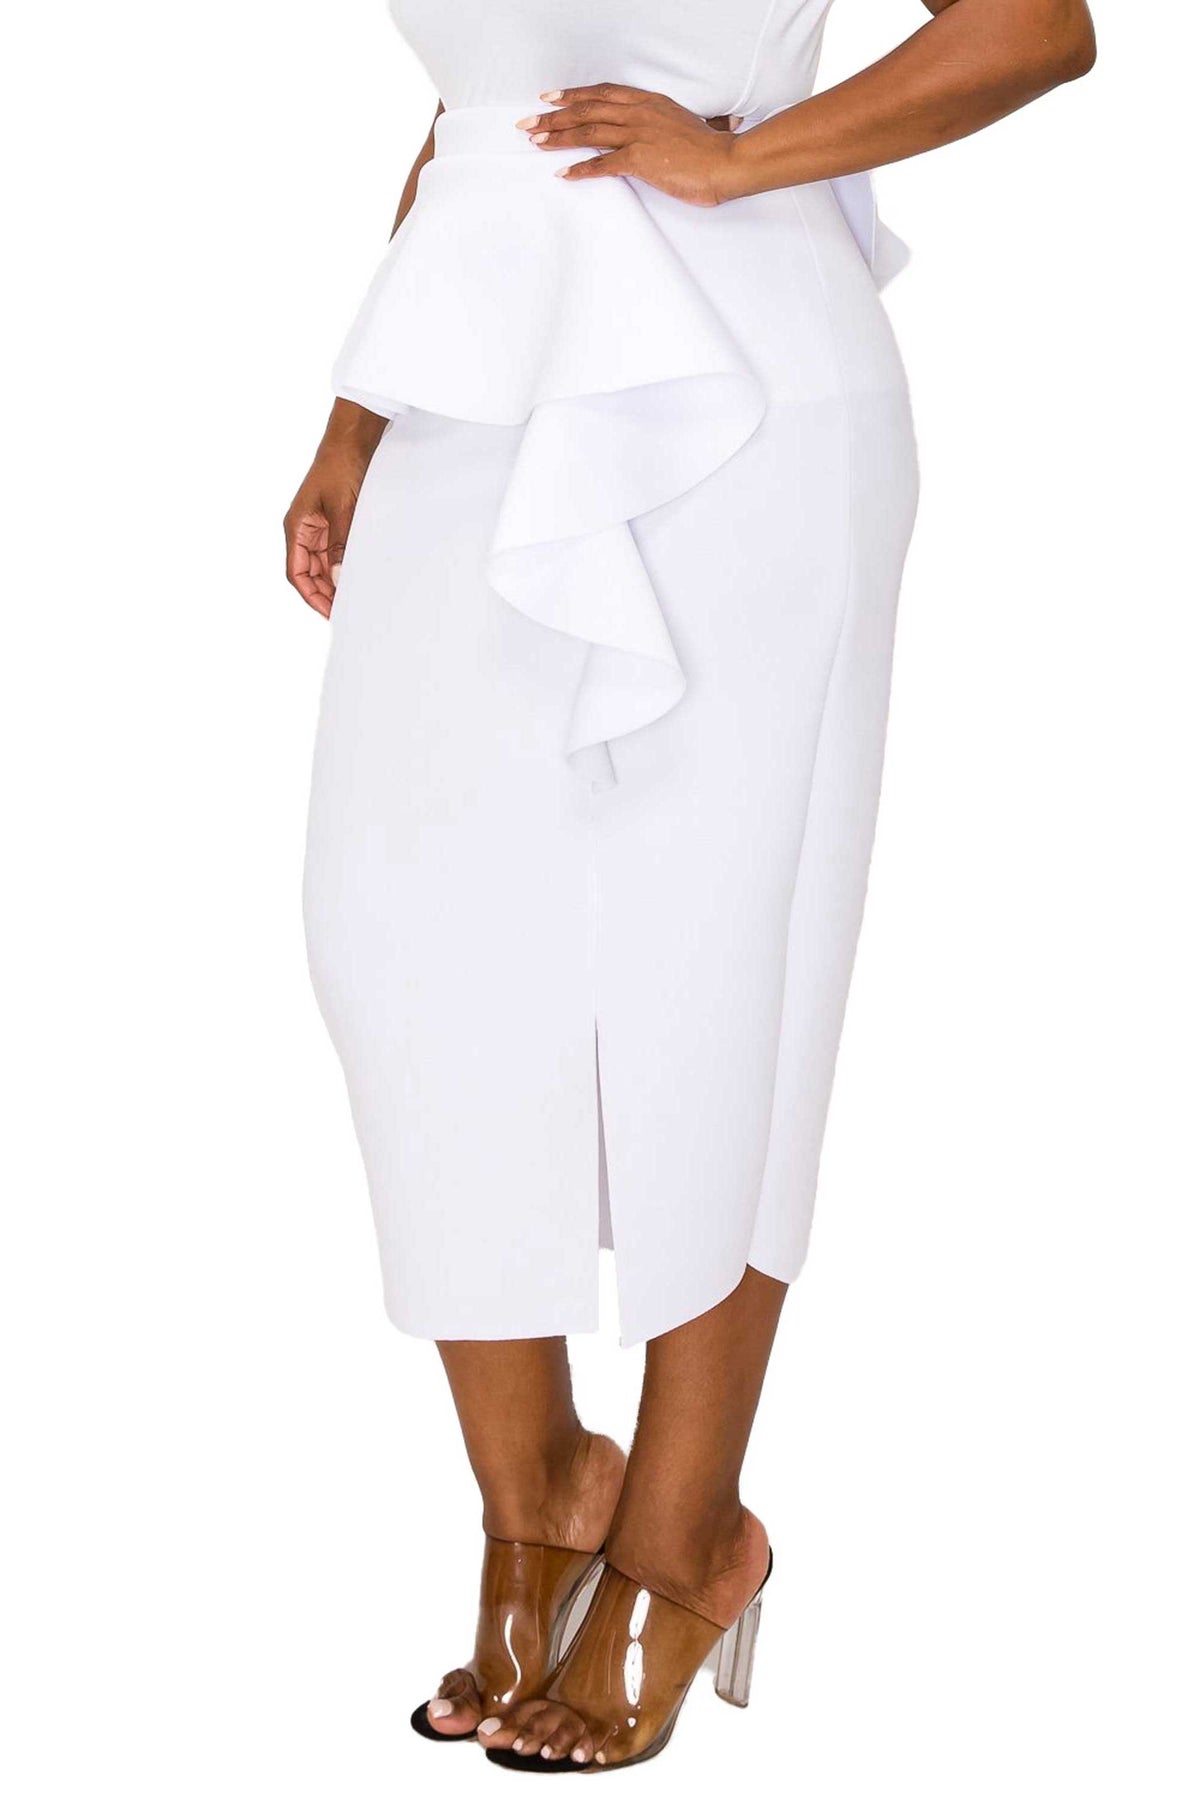 livd L I V D women's trendy contemporary plus size peplum midi skirt with ruffles and leg slit neoprene air scuba fabric in white